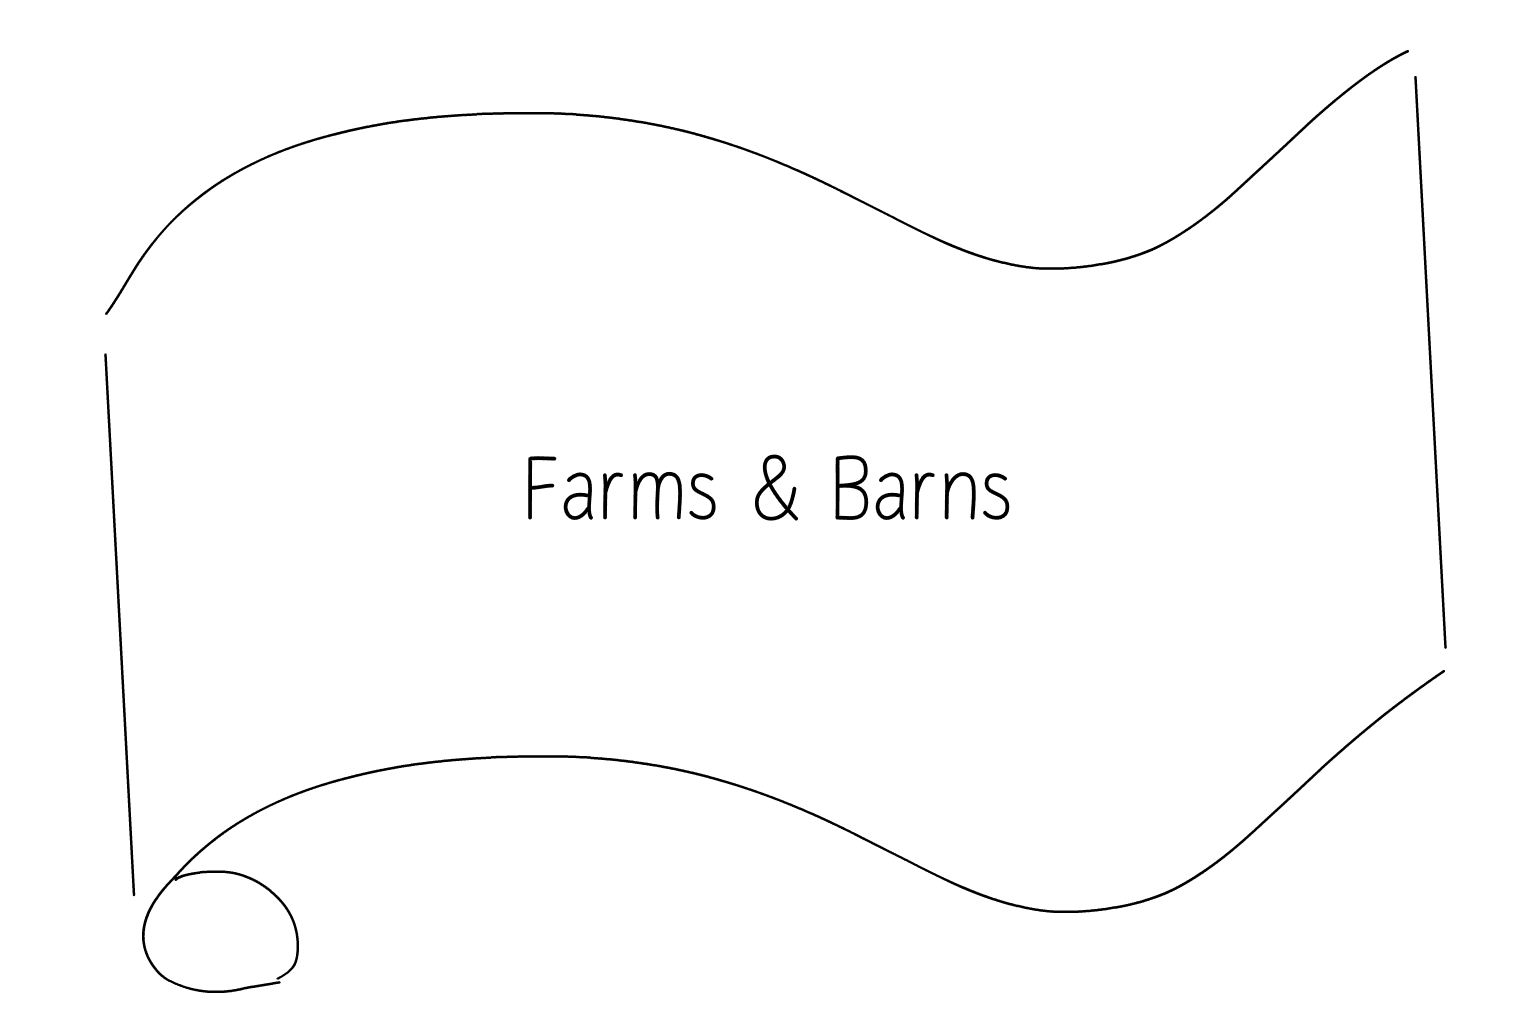 Ilustrácia svadobných fariem a stodôl